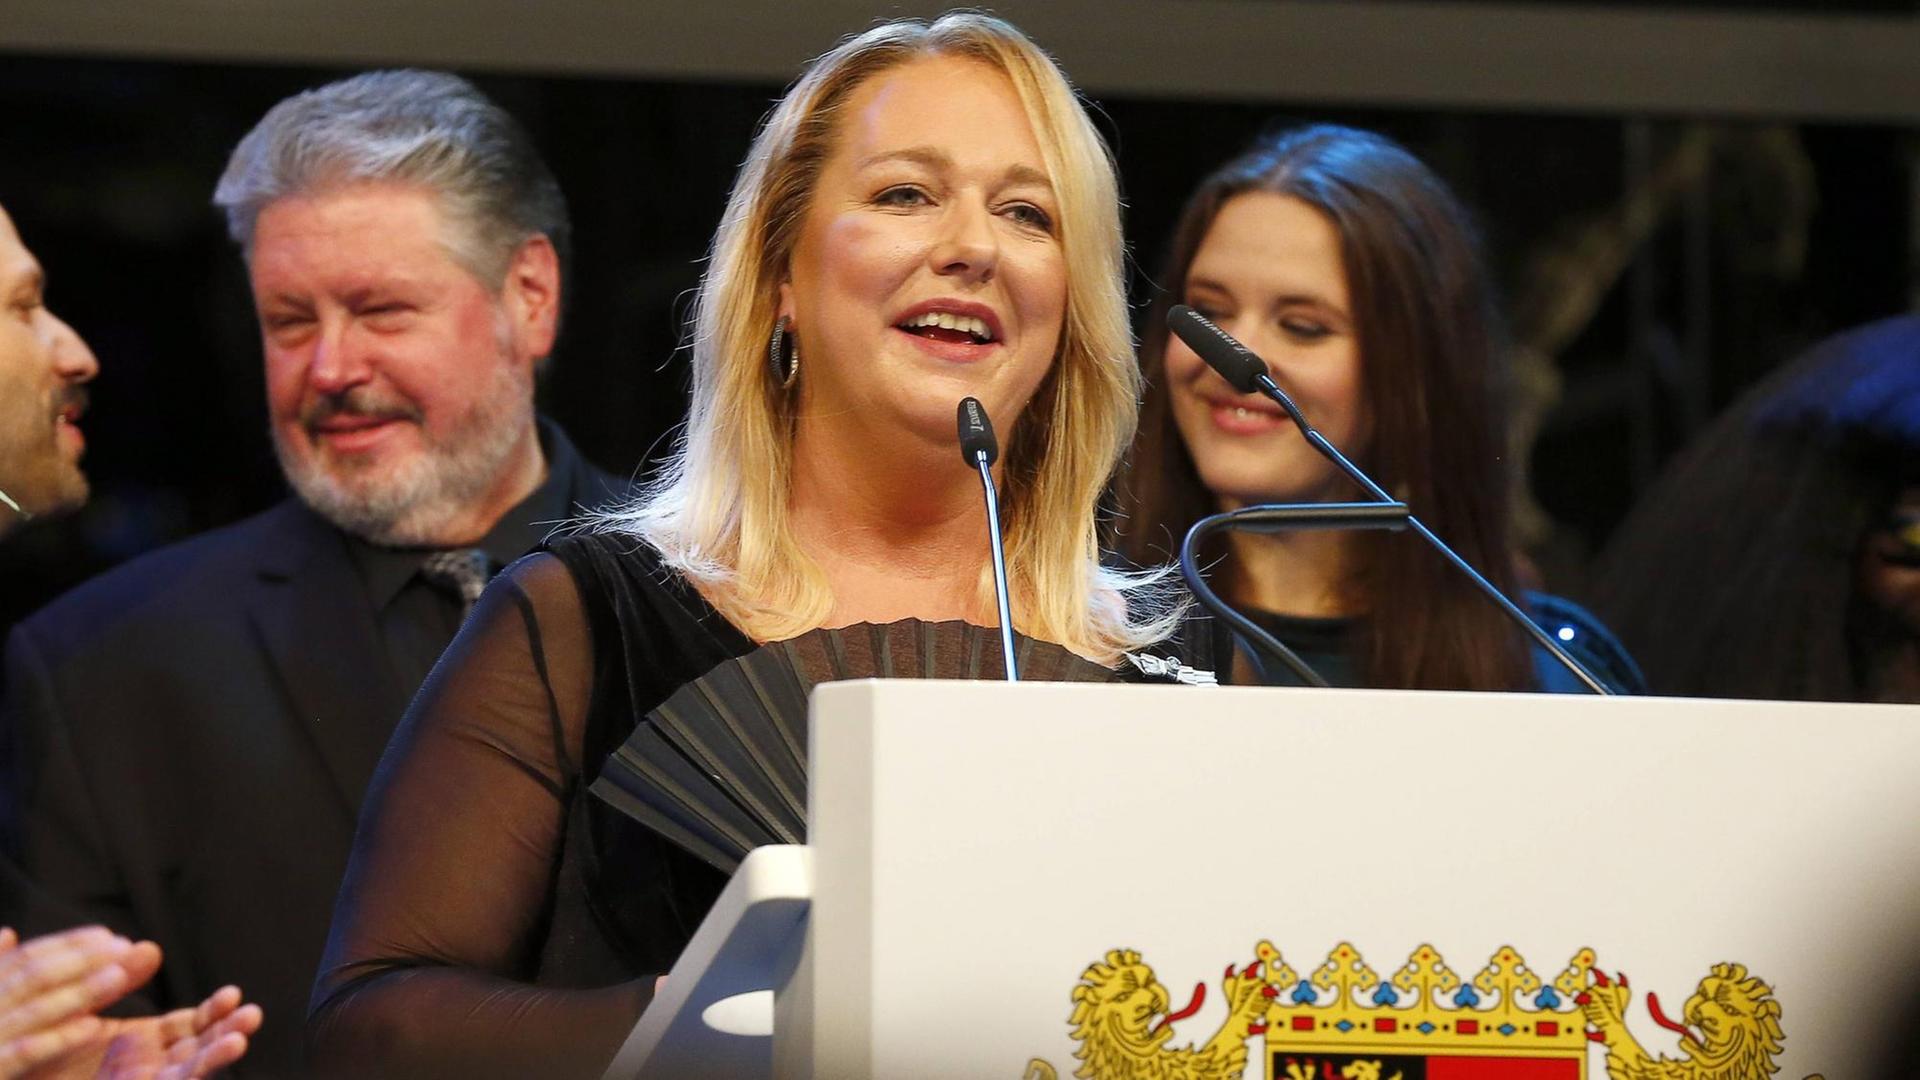 Festspielleiterin Katharina Wagner spricht hinter einem Pult mit den Wappen von Bayreuth in Mikrofone.